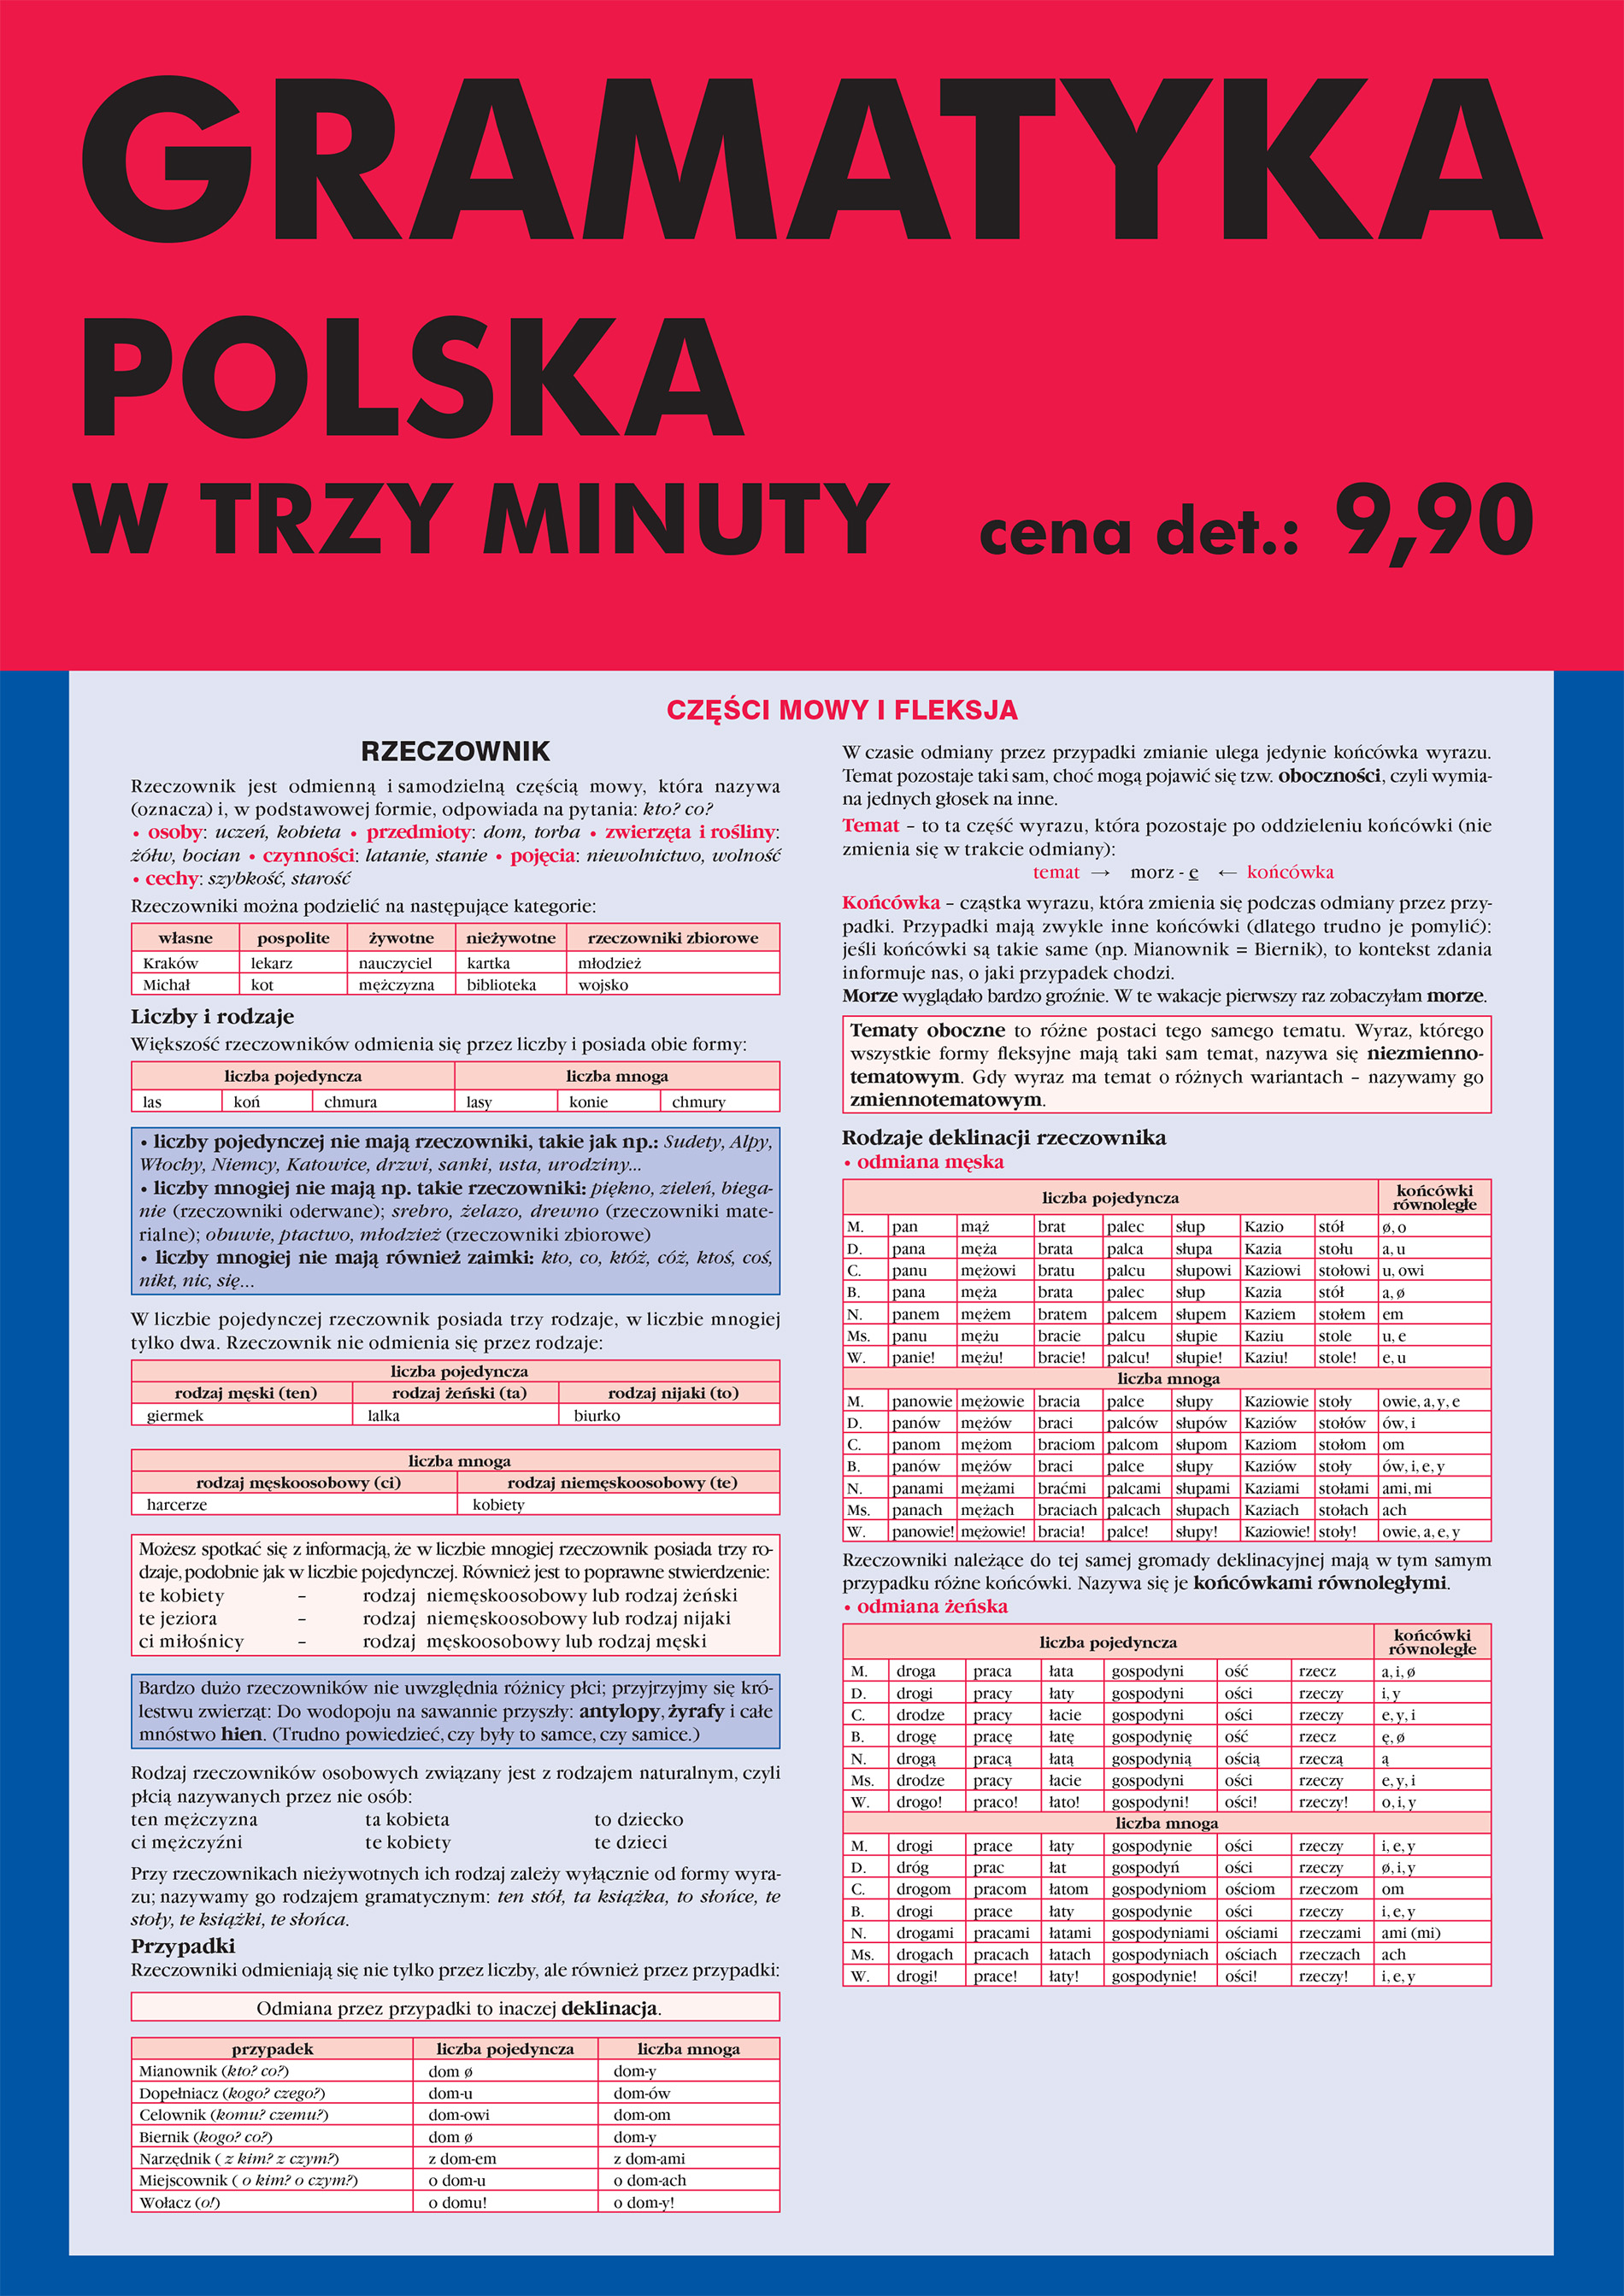 Gramatyka polska w trzy minuty